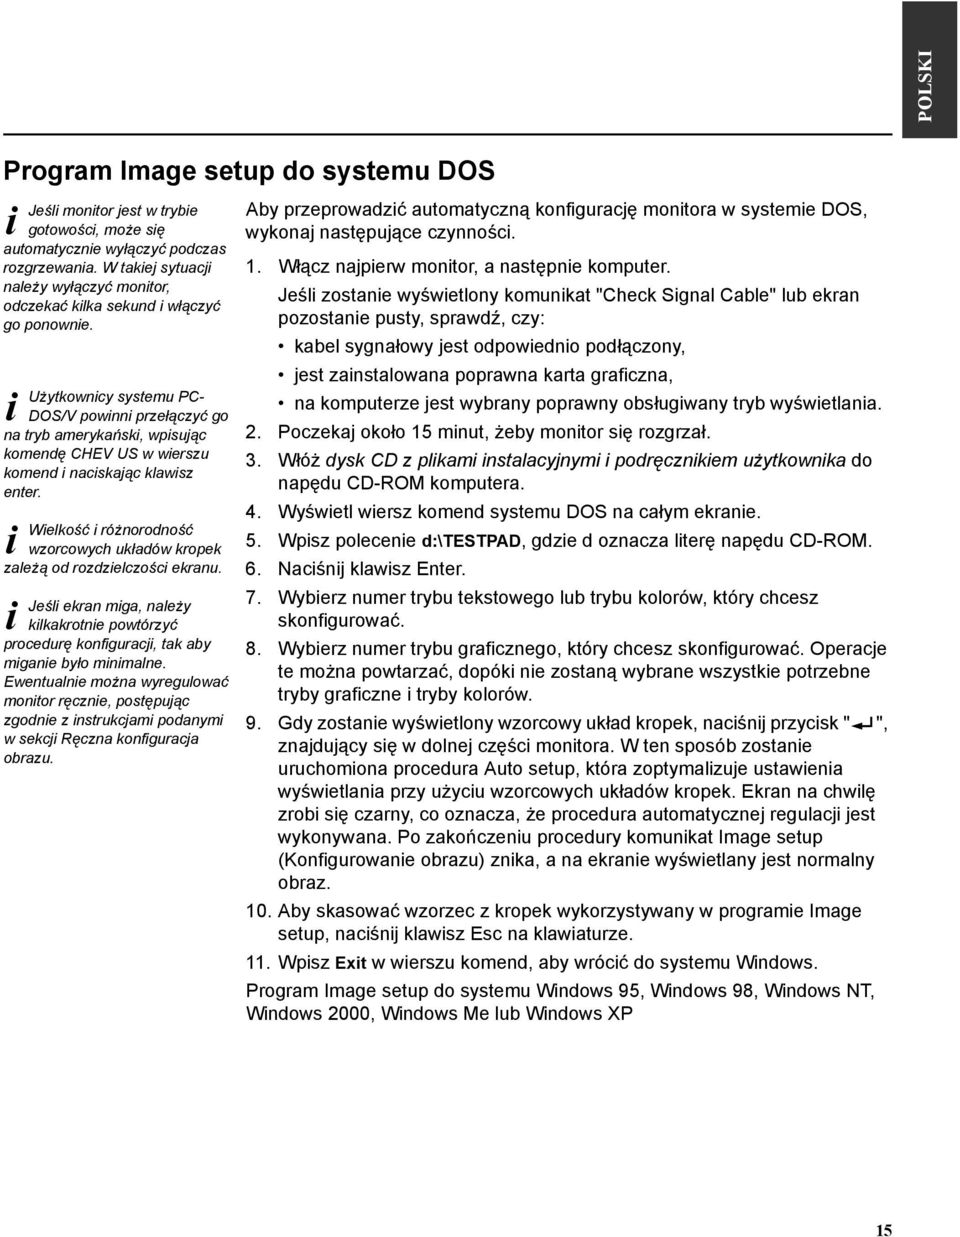 Użytkowncy systemu PC- DOS/V pownn przełączyć go na tryb amerykańsk, wpsując komendę CHEV US w werszu komend nacskając klawsz enter.